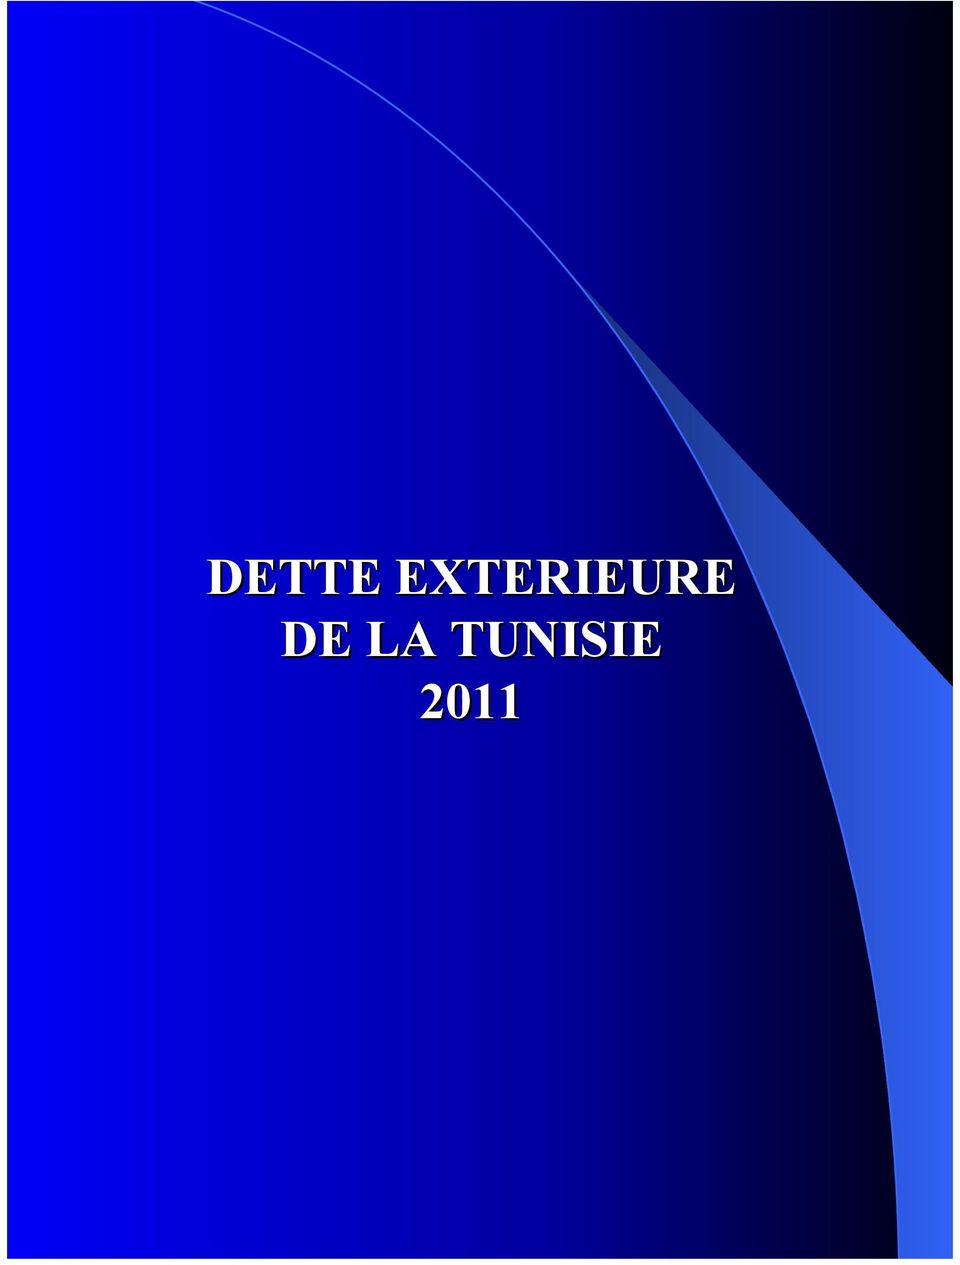 TUNISIE DETTE EXTERIEURE